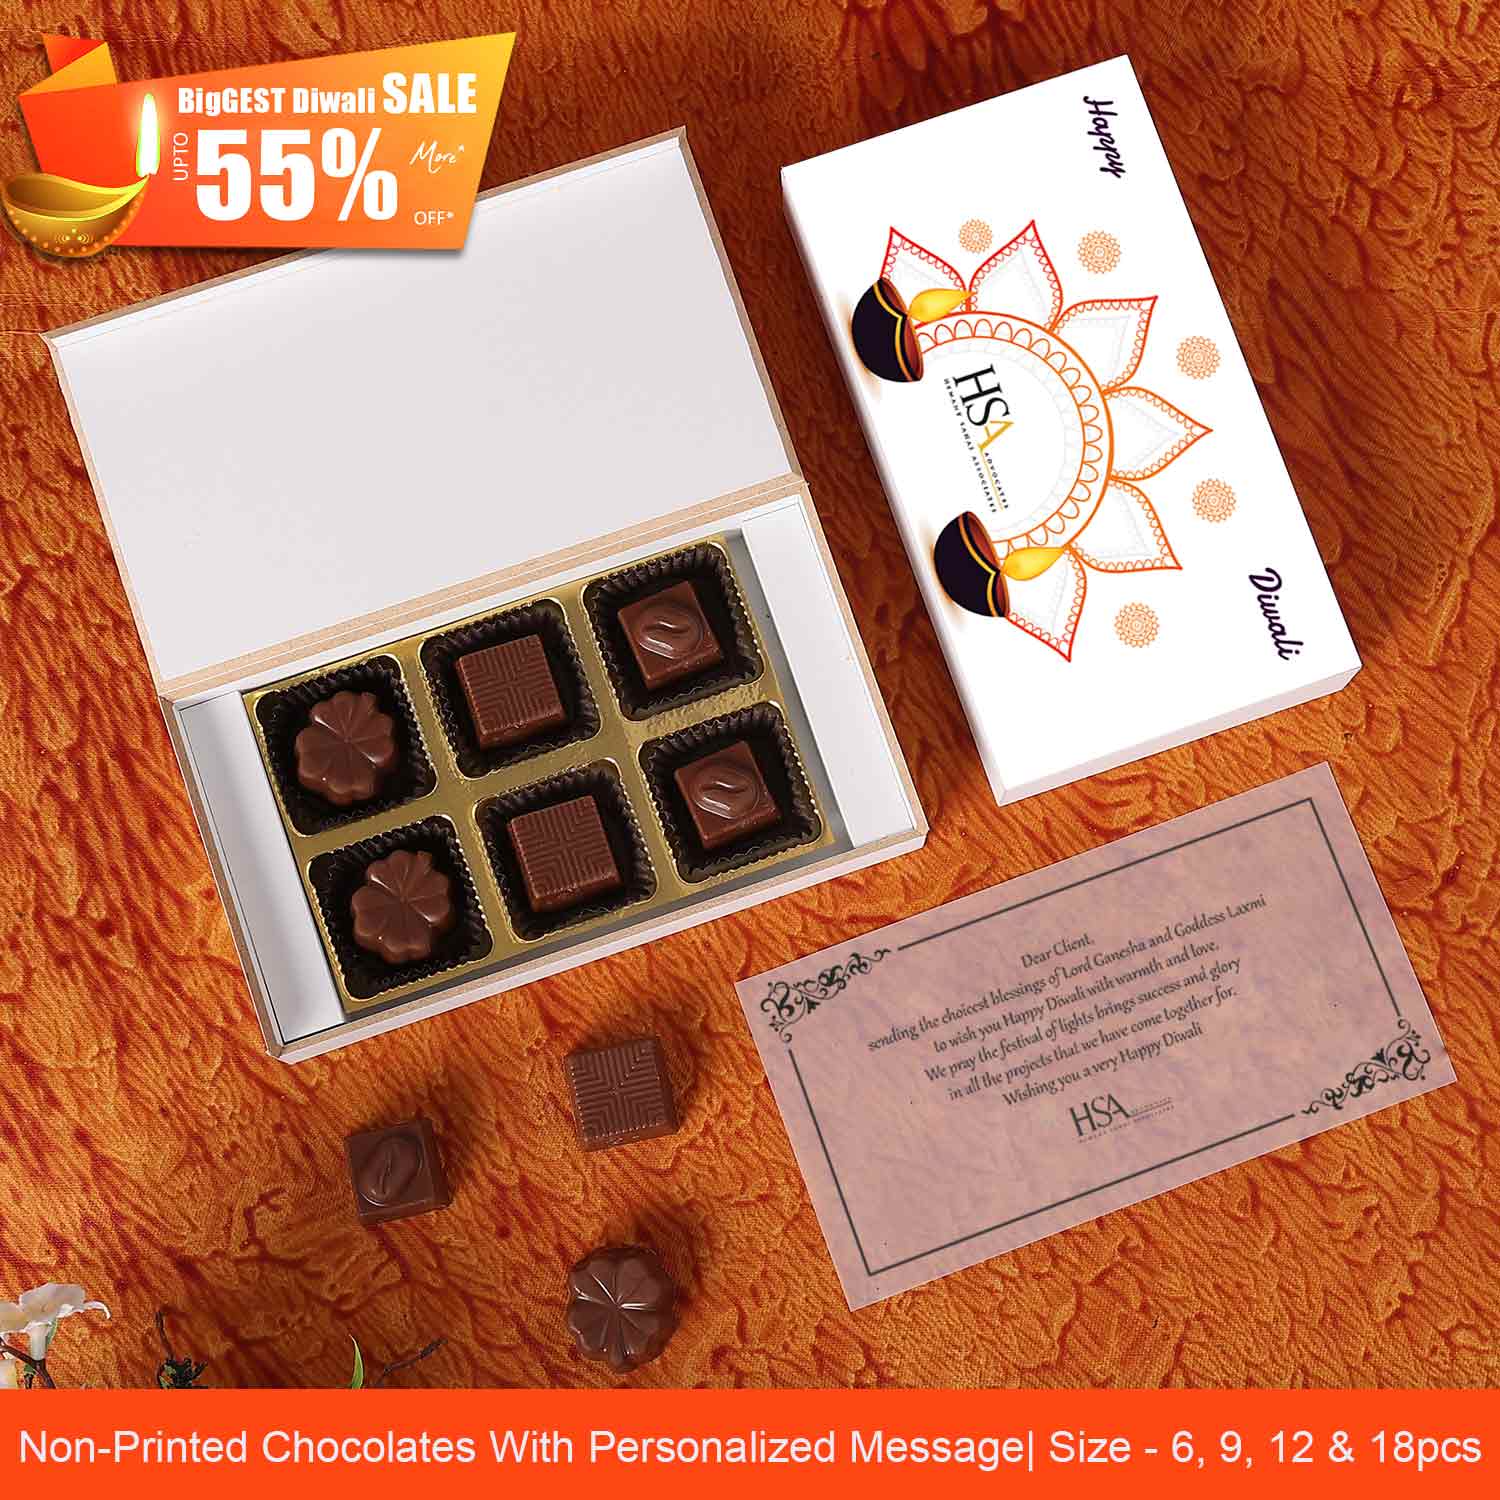 Diwali Gifting & Corporate Gifting, custom chocolate corporate gifts, chocolates corporate gifts,chocolate corporate gifts india,customized chocolate return gifts